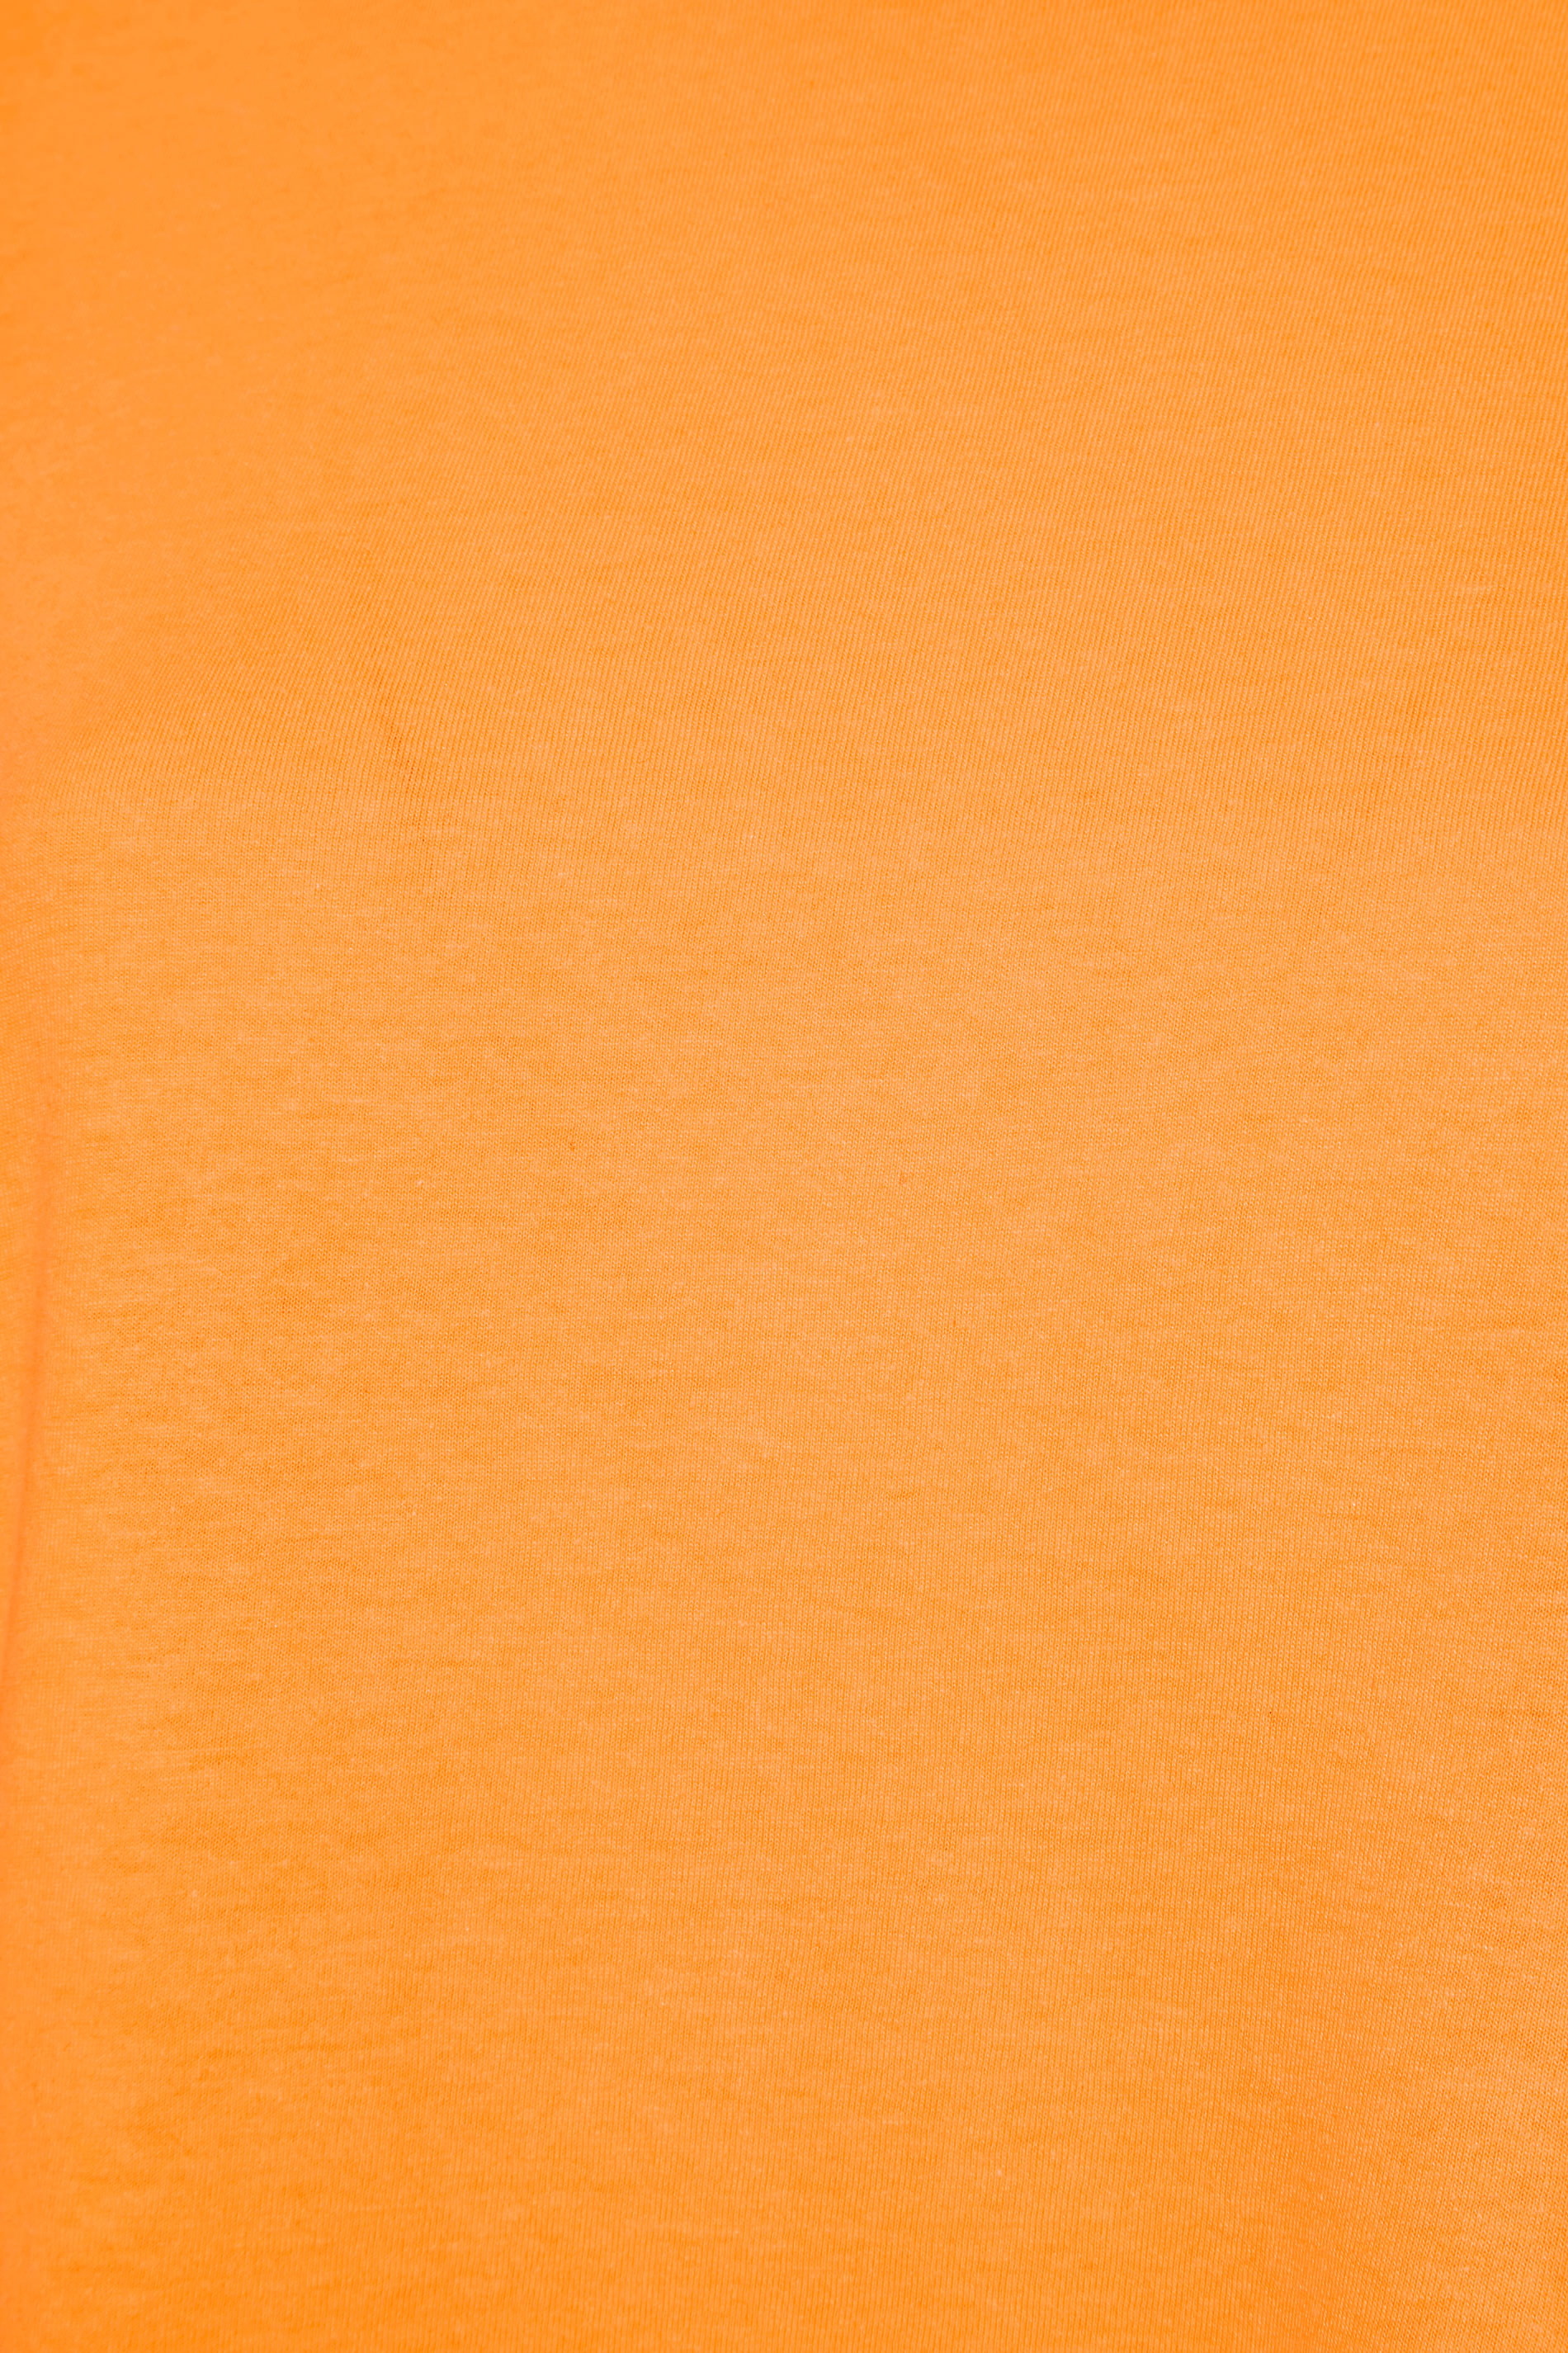 Grande taille  Tops Grande taille  T-Shirts Basiques & Débardeurs | T-Shirt Orange en Jersey - GO88620